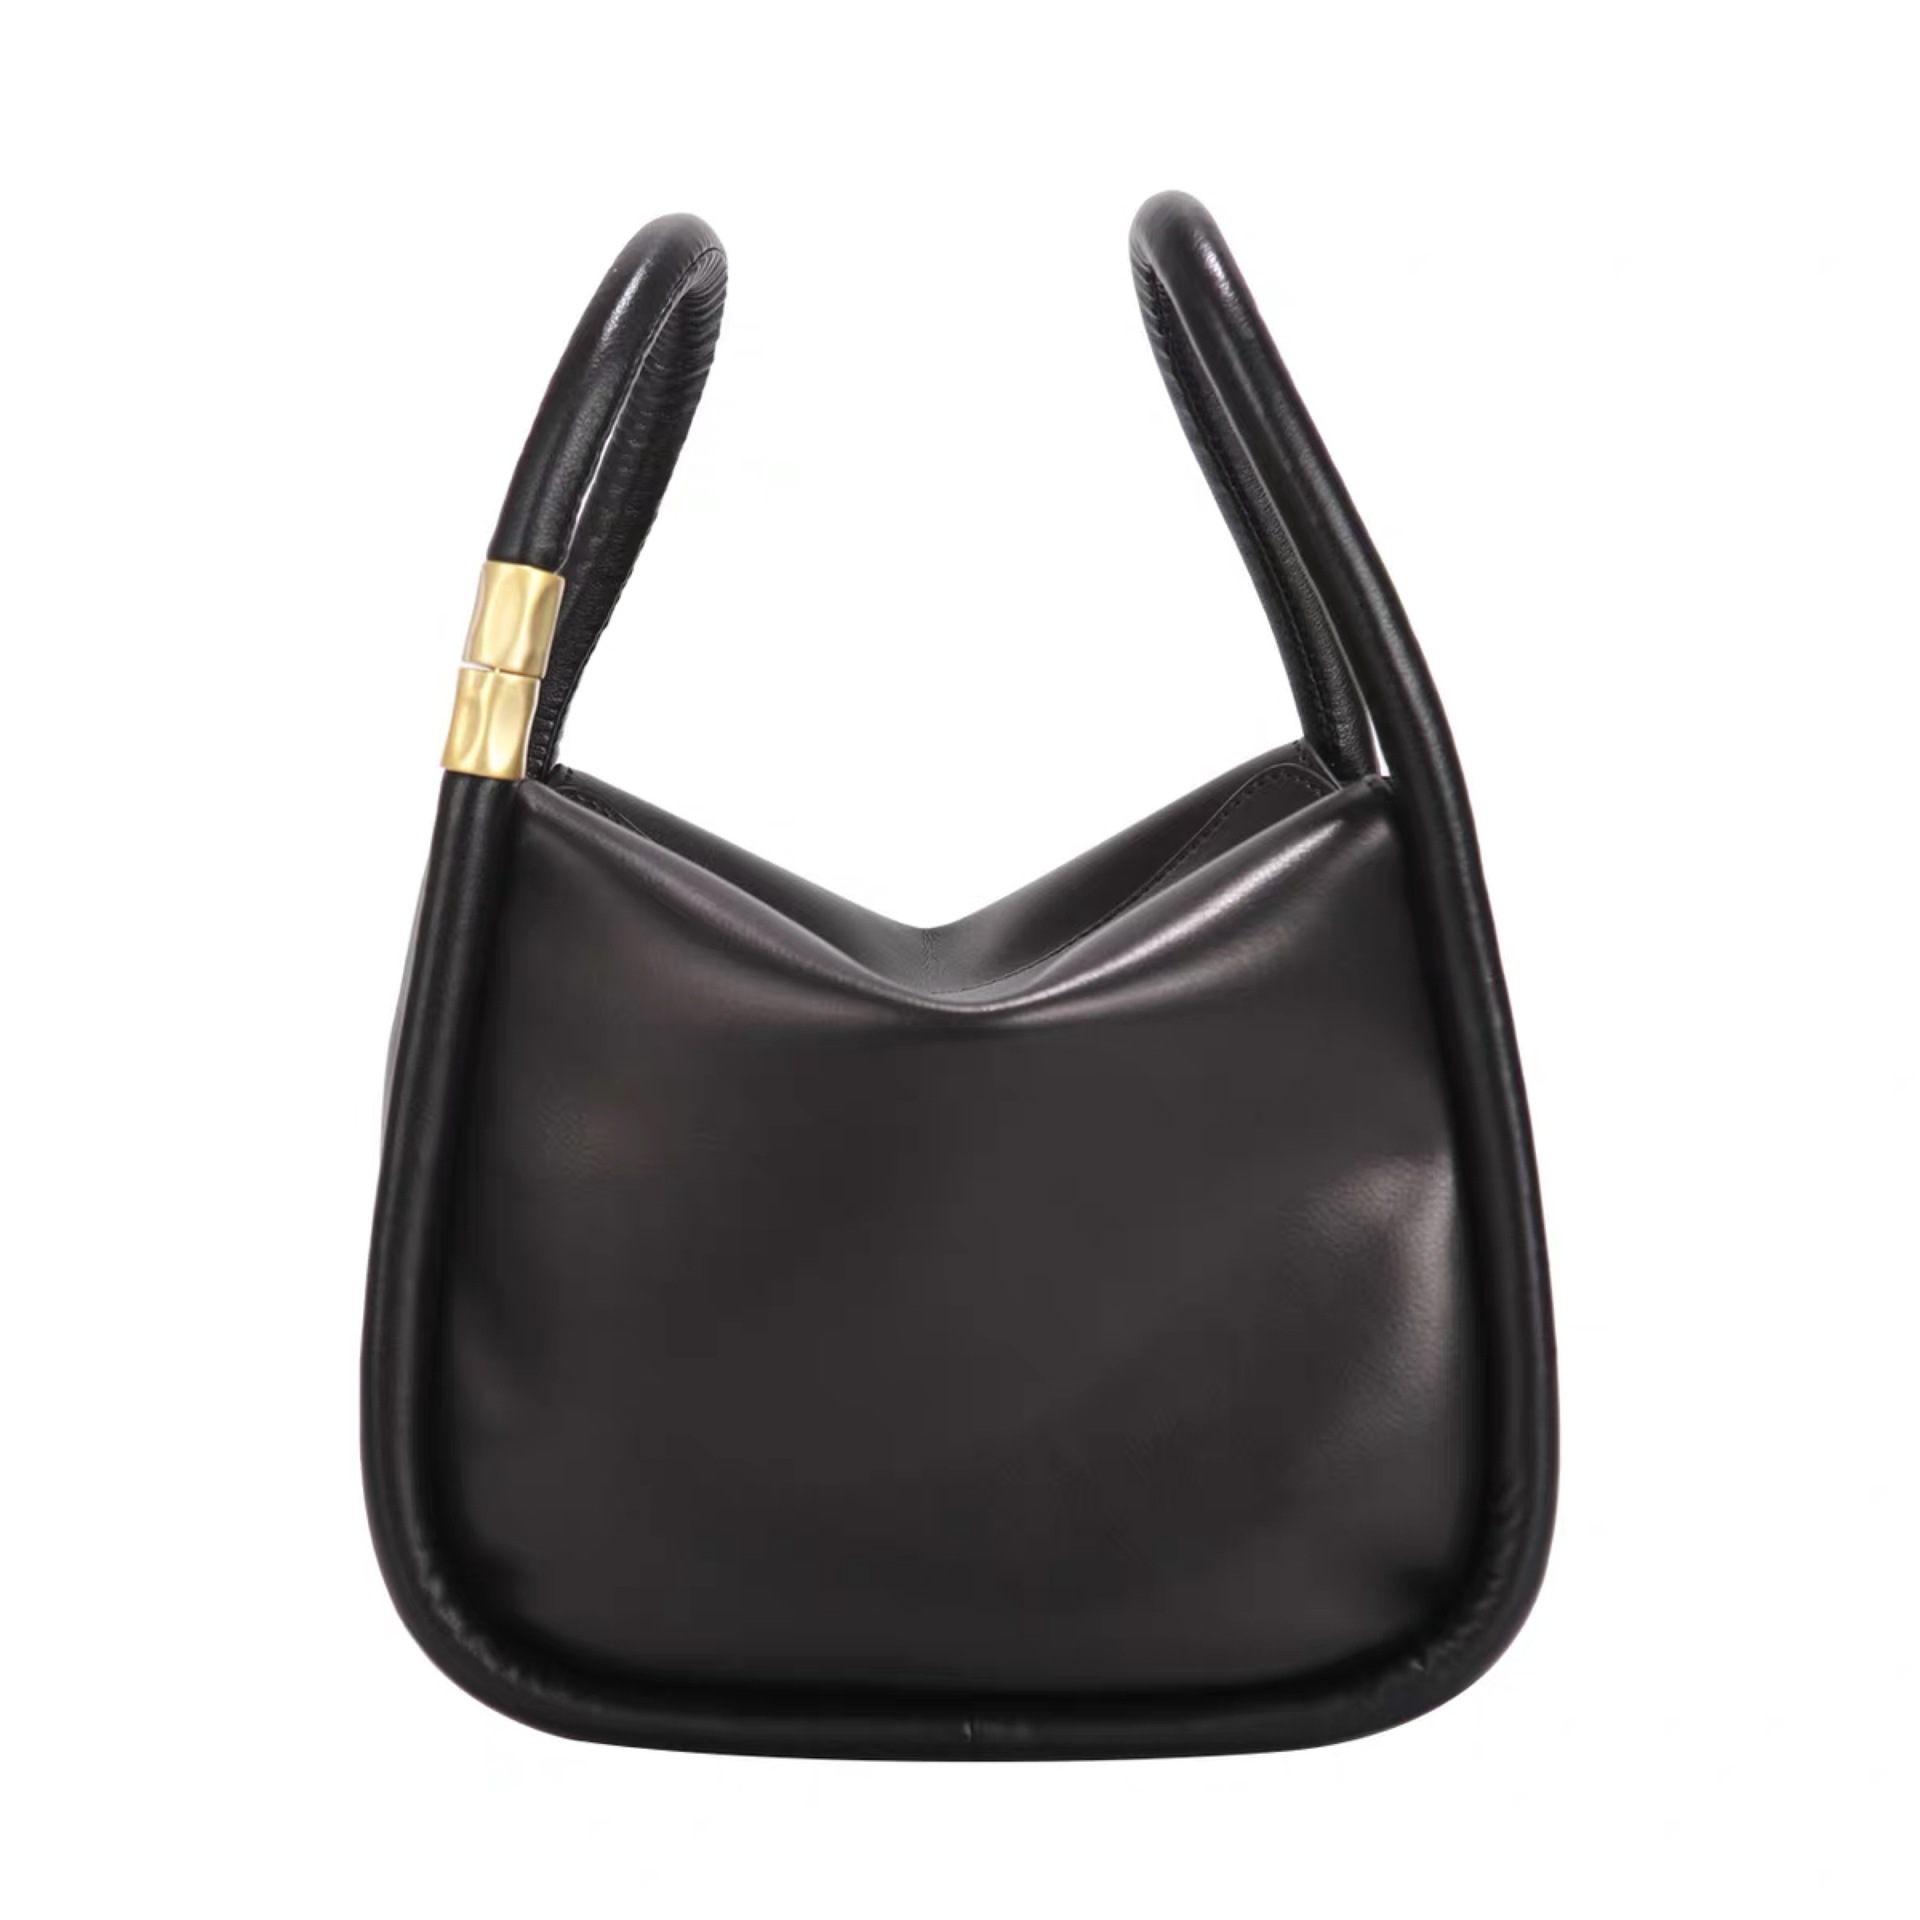 Chloe Leather Handbag